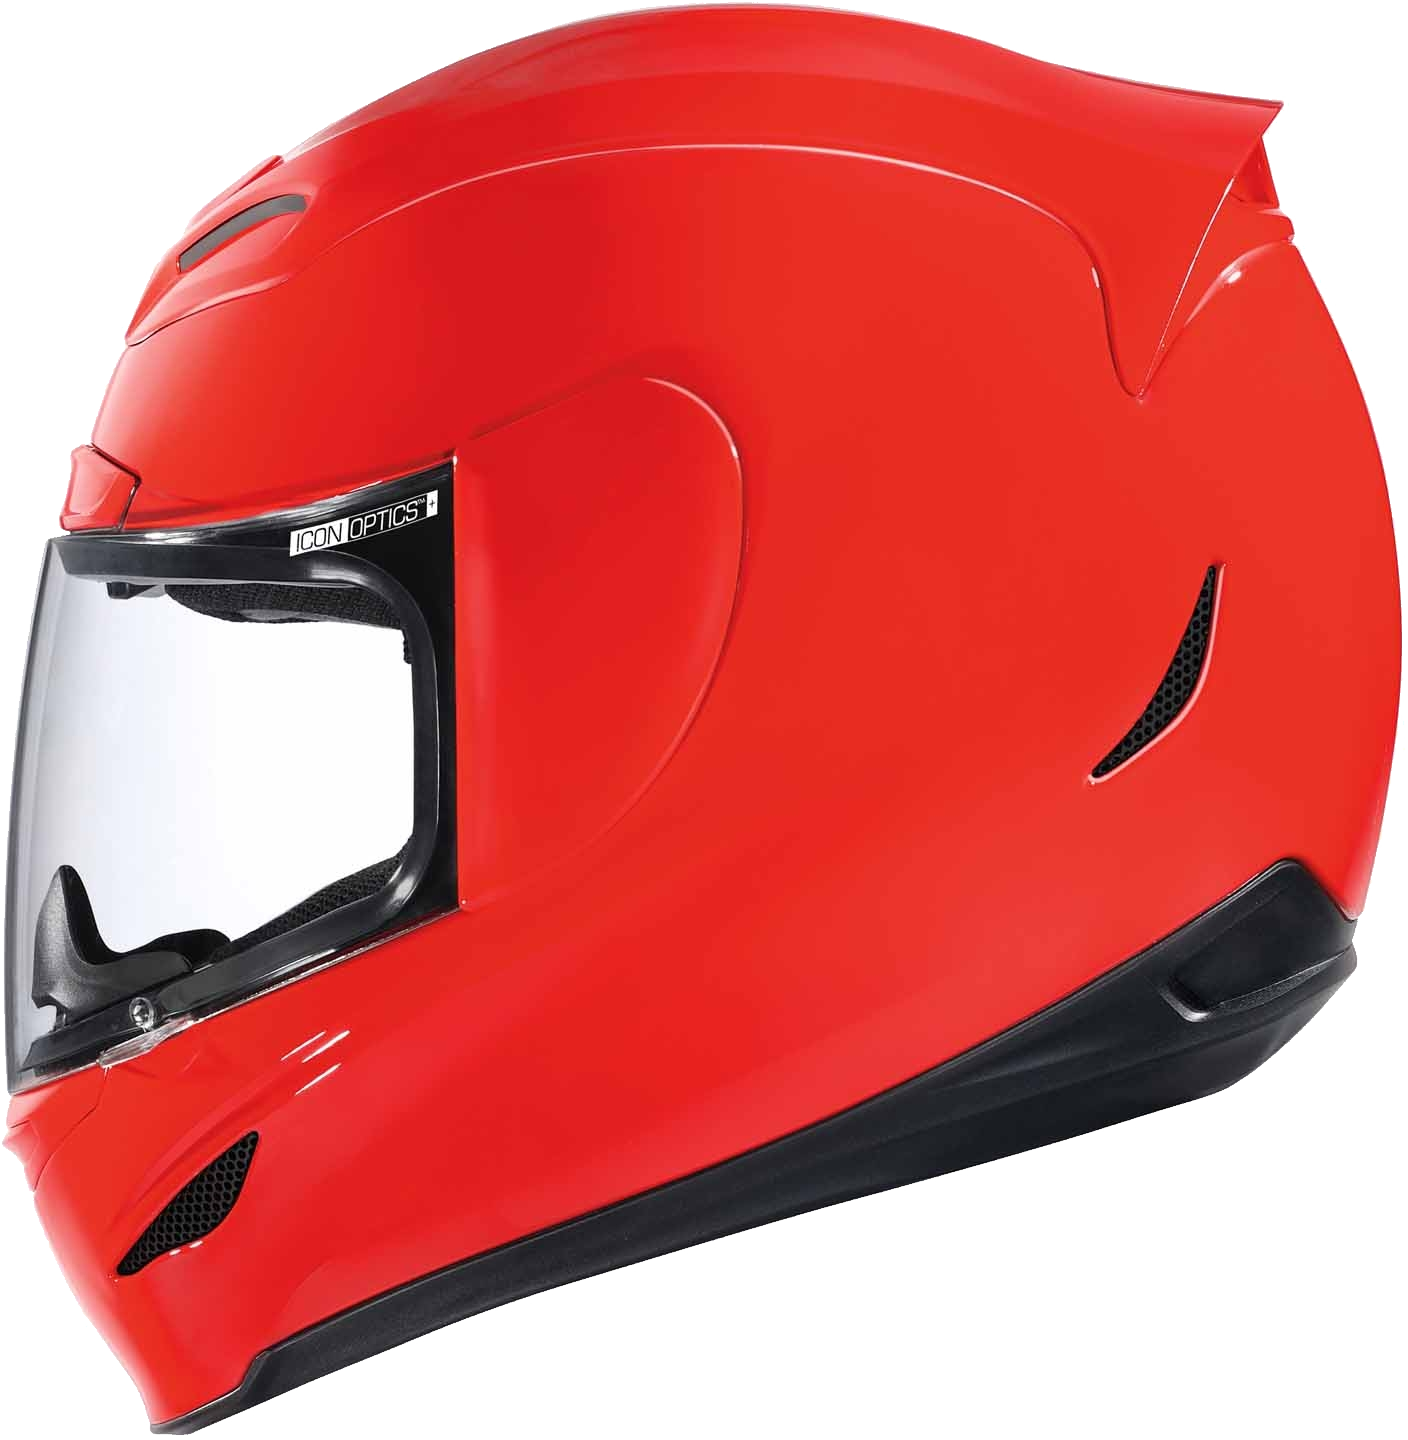 Motorcycle Helmet PNG Image